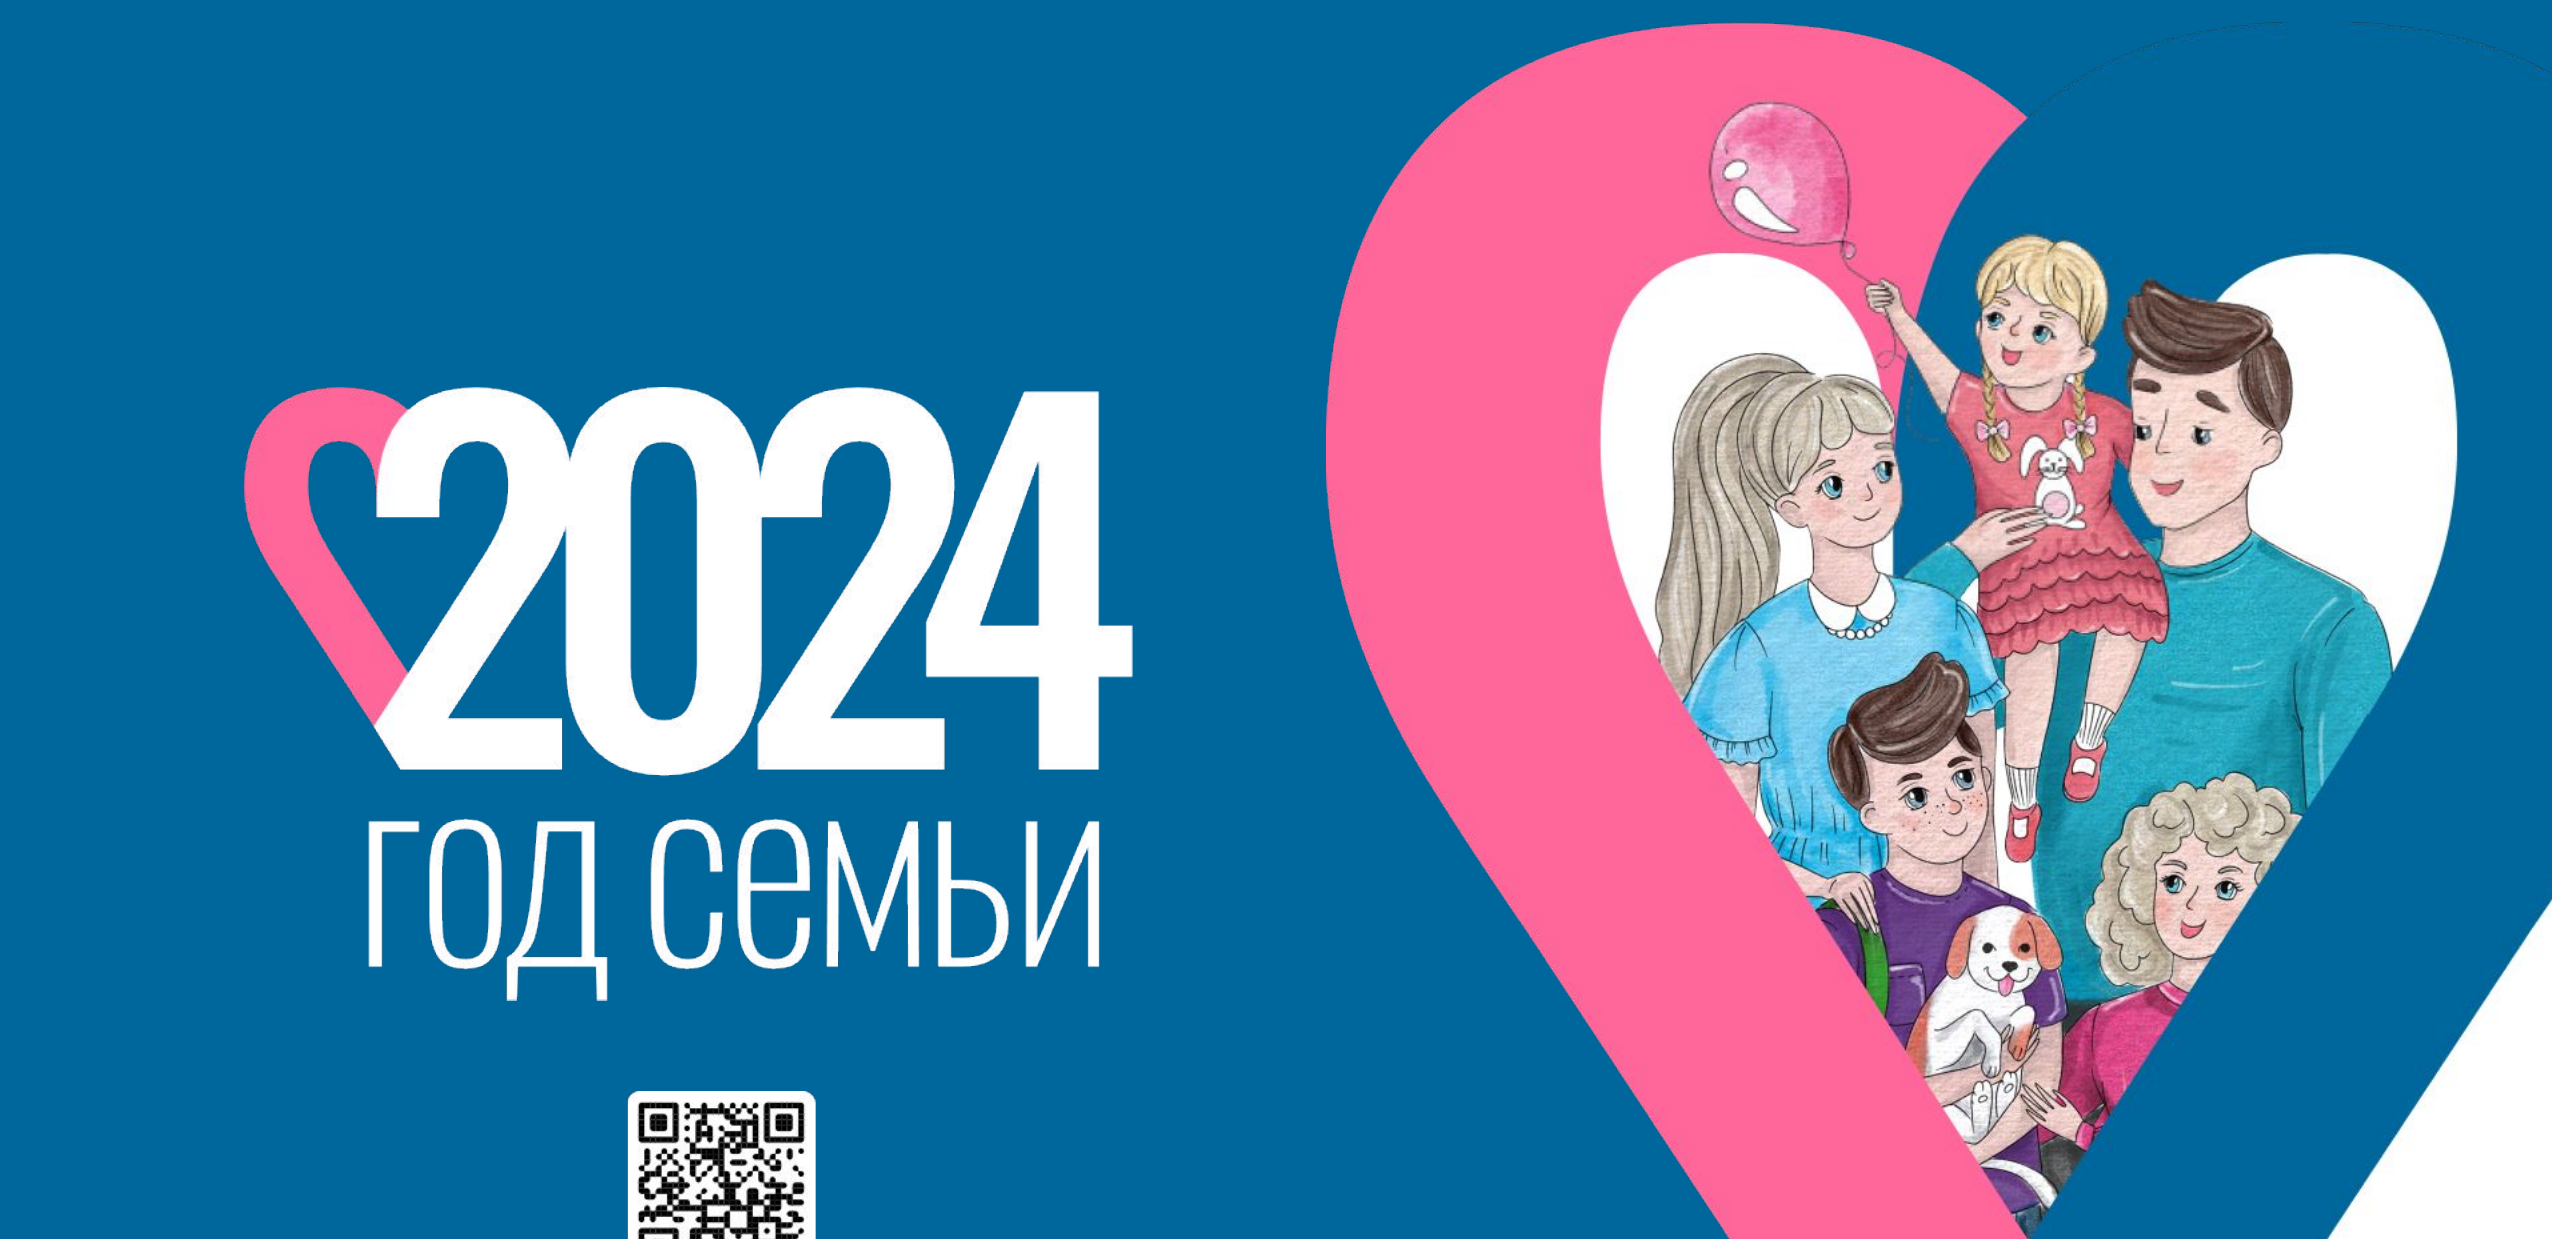 2024 – год семьи в России